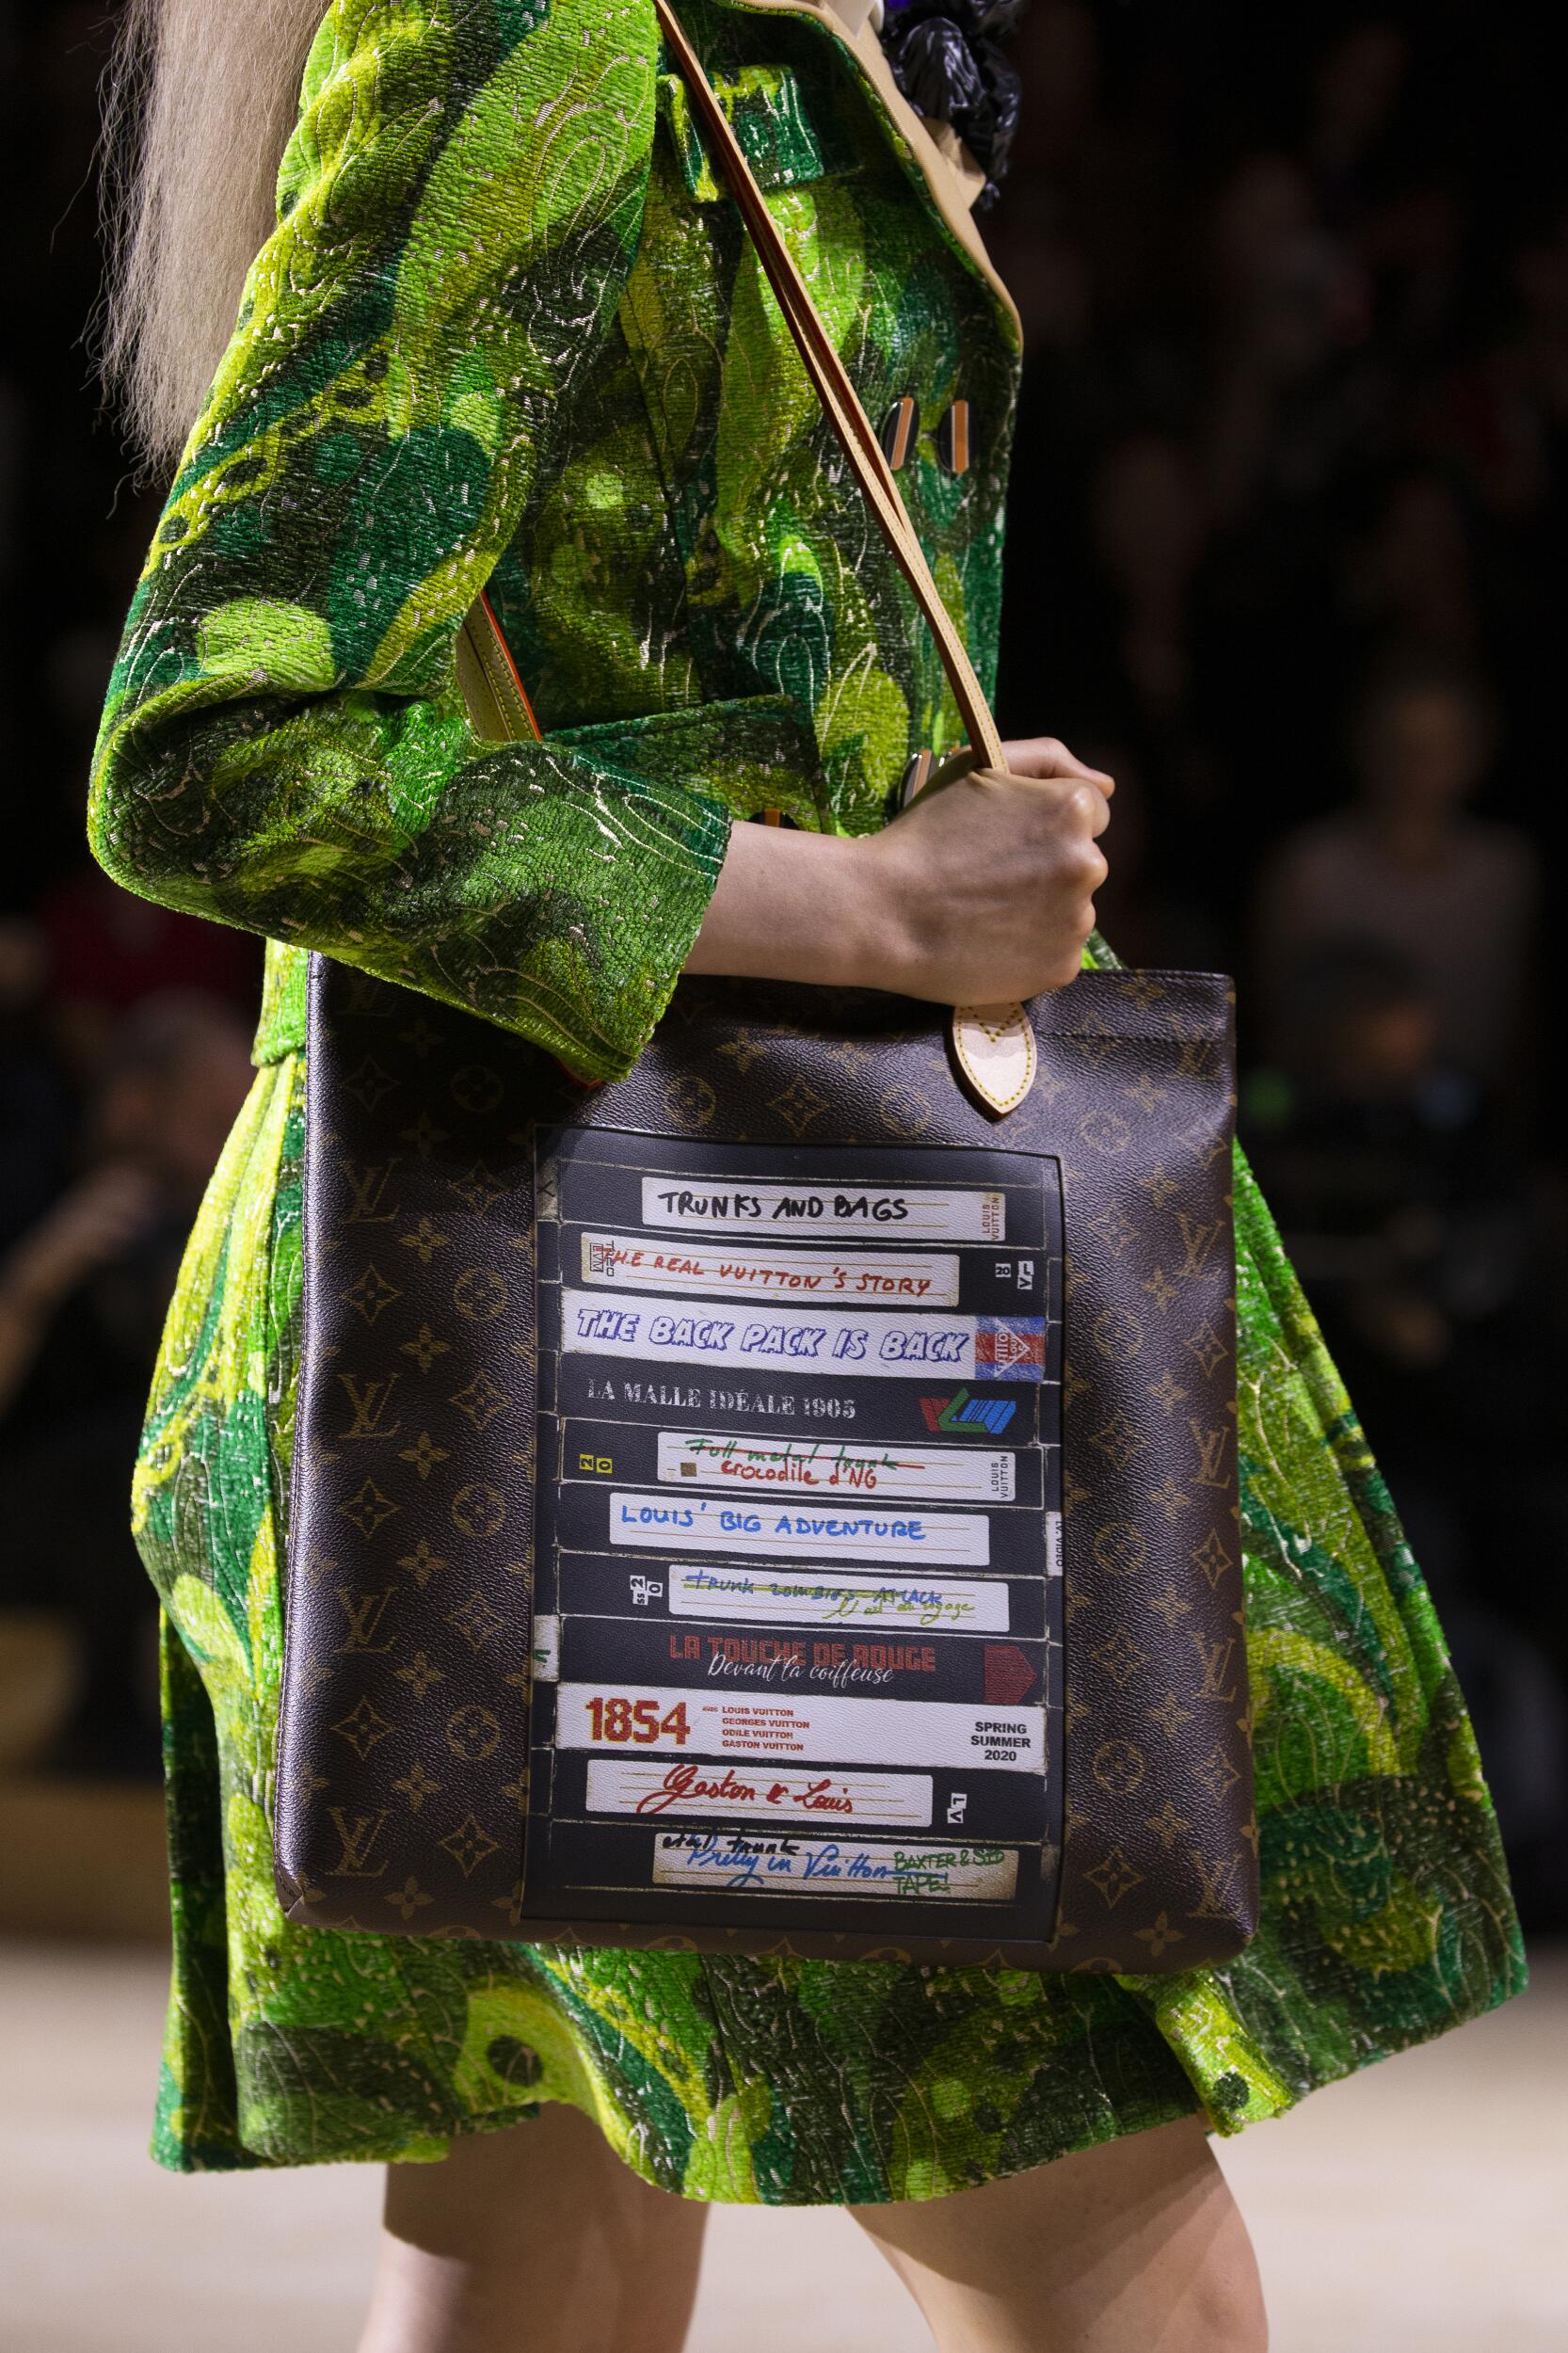 Louis Vuitton 2020 Bags Collection